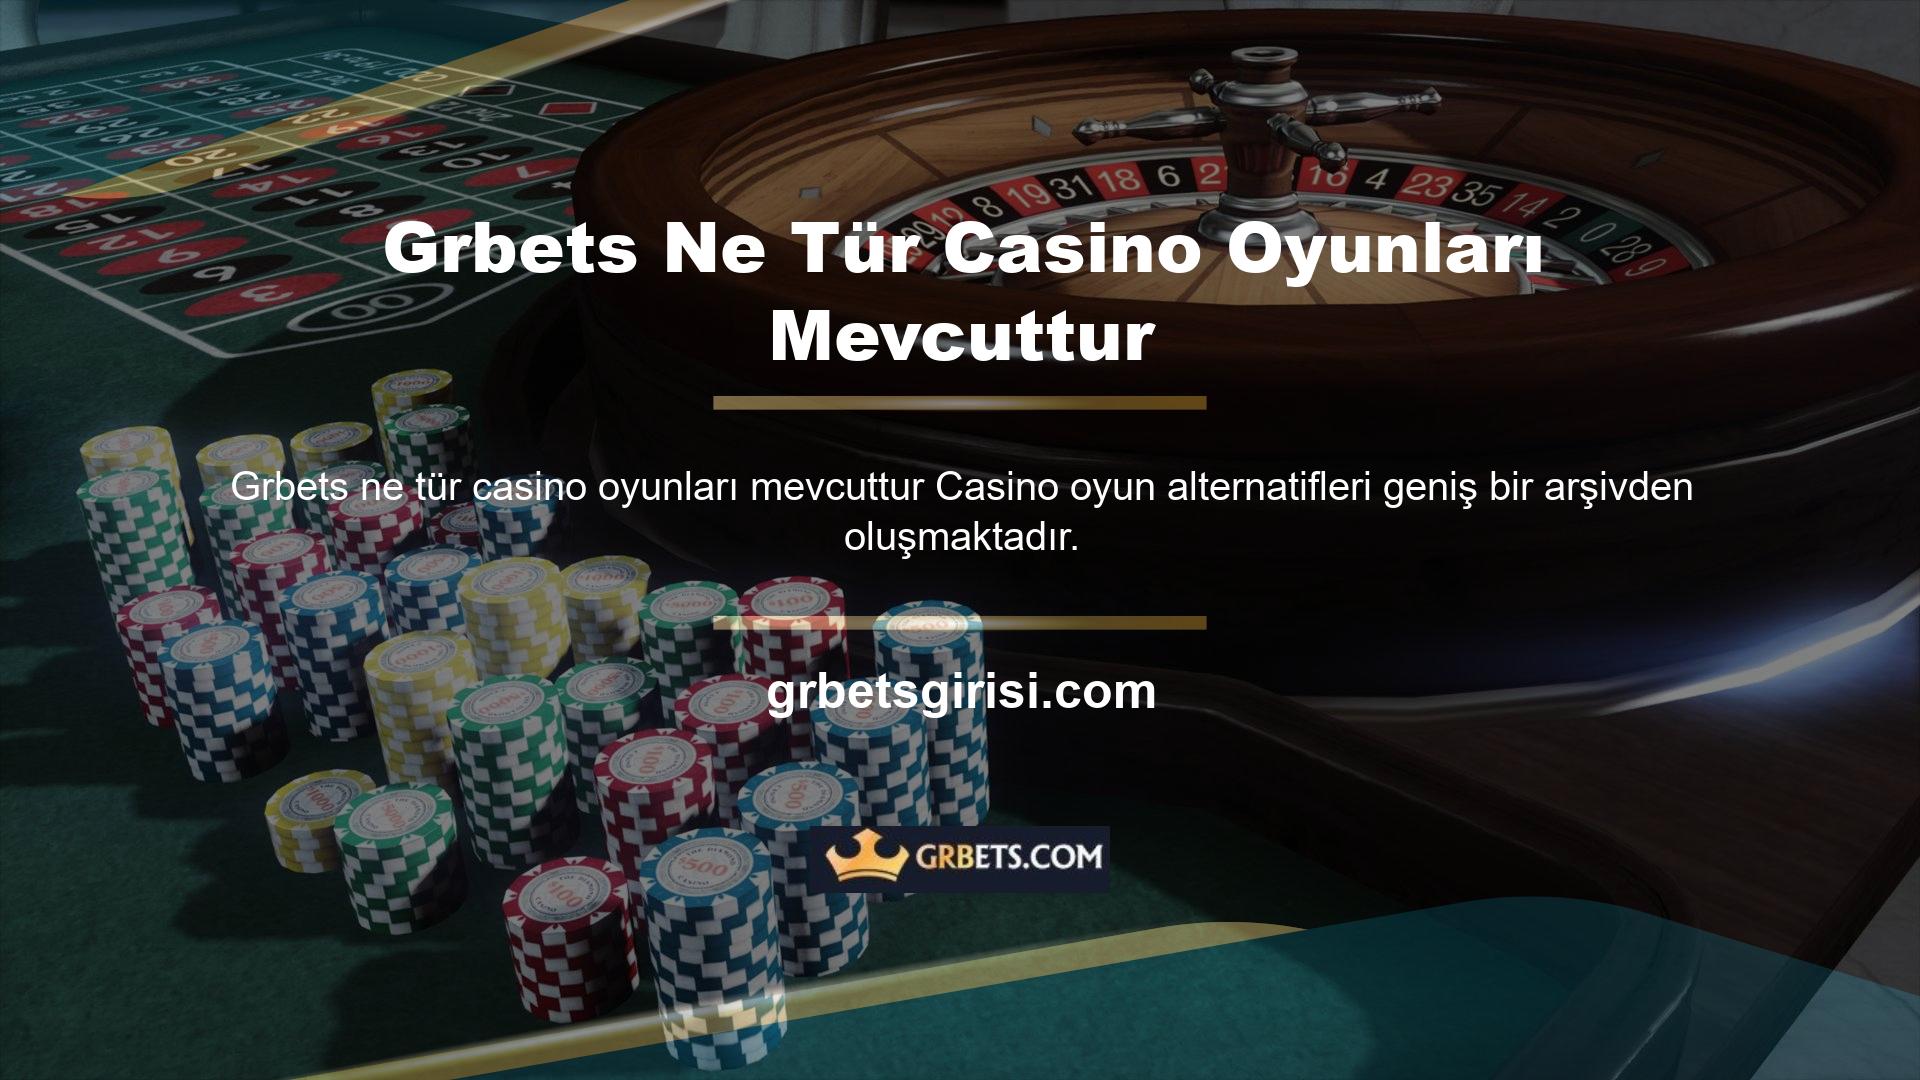 Bu arşiv ilgiliyse, kullanıcılar mevcut casino oyunları türleri hakkında cevaplar arıyor